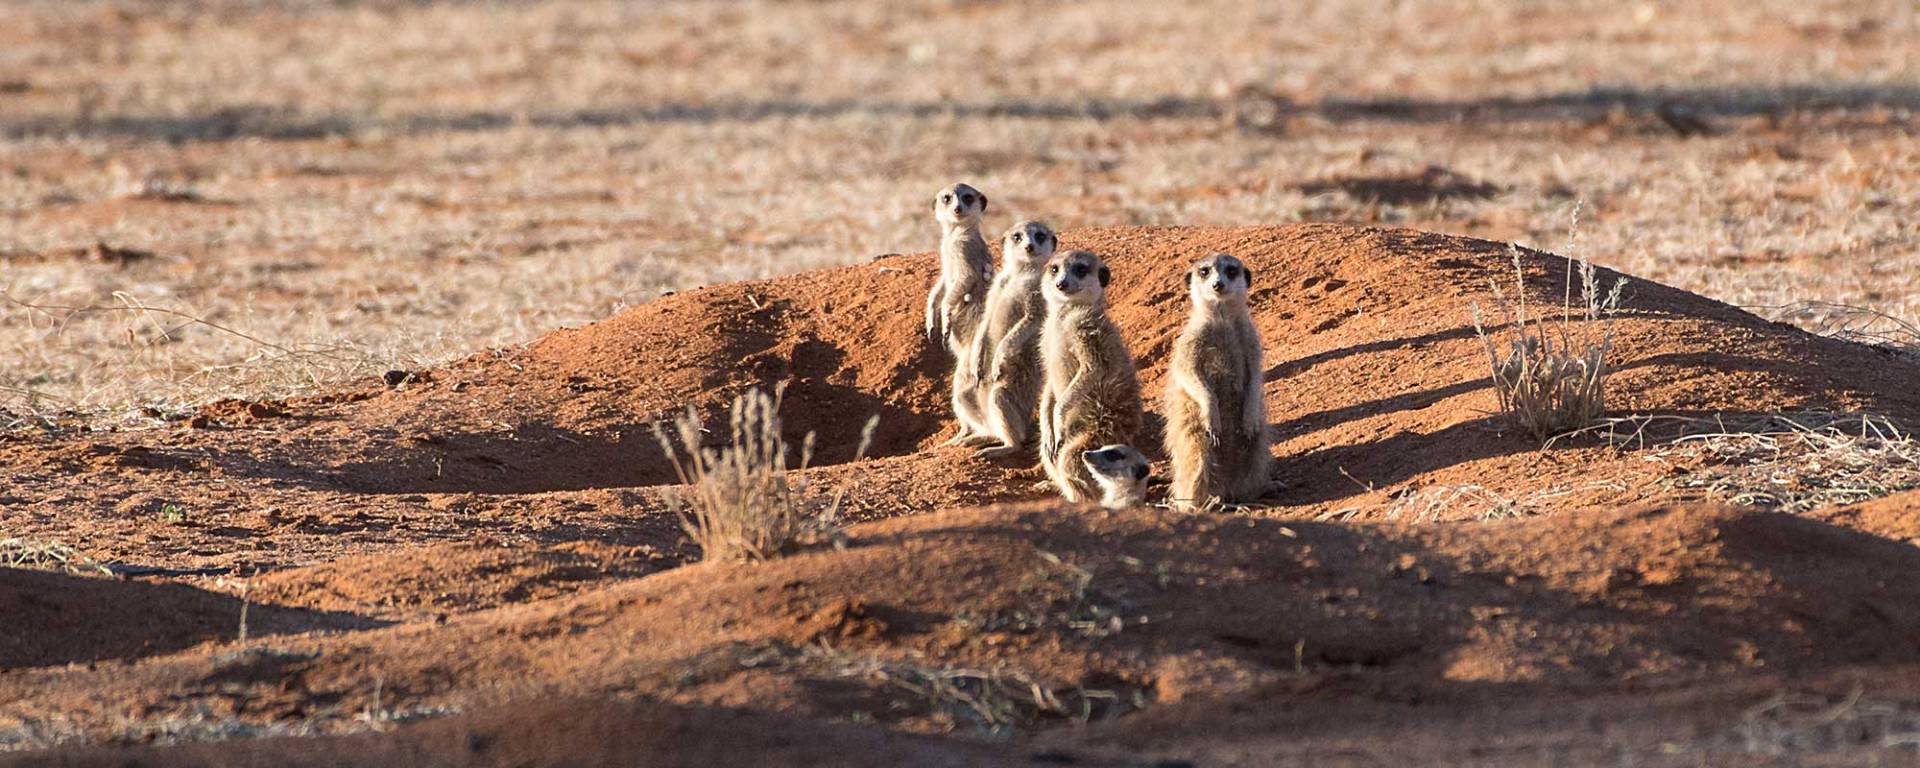 Kalahari Erdmännchen